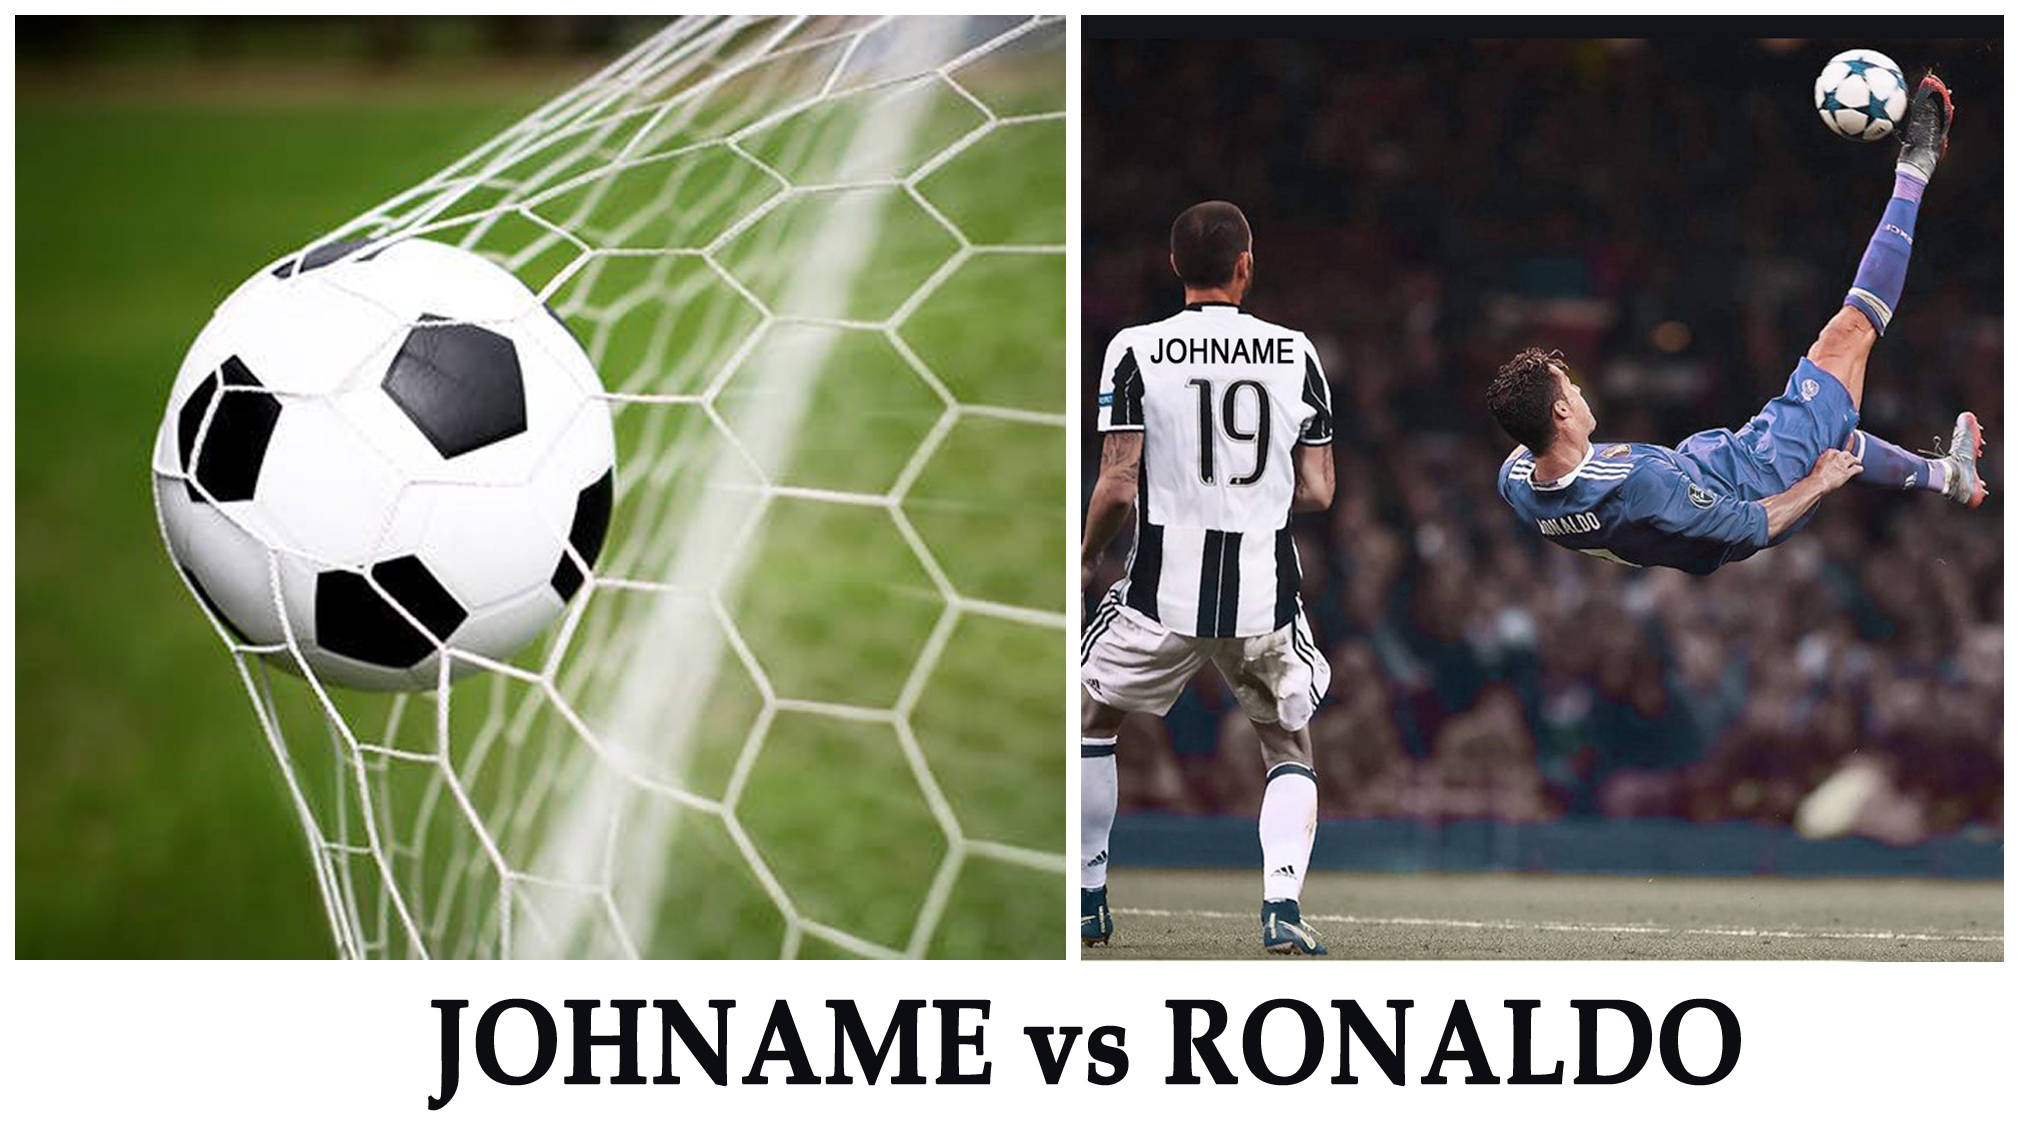 Johname vs Ronaldo.jpg